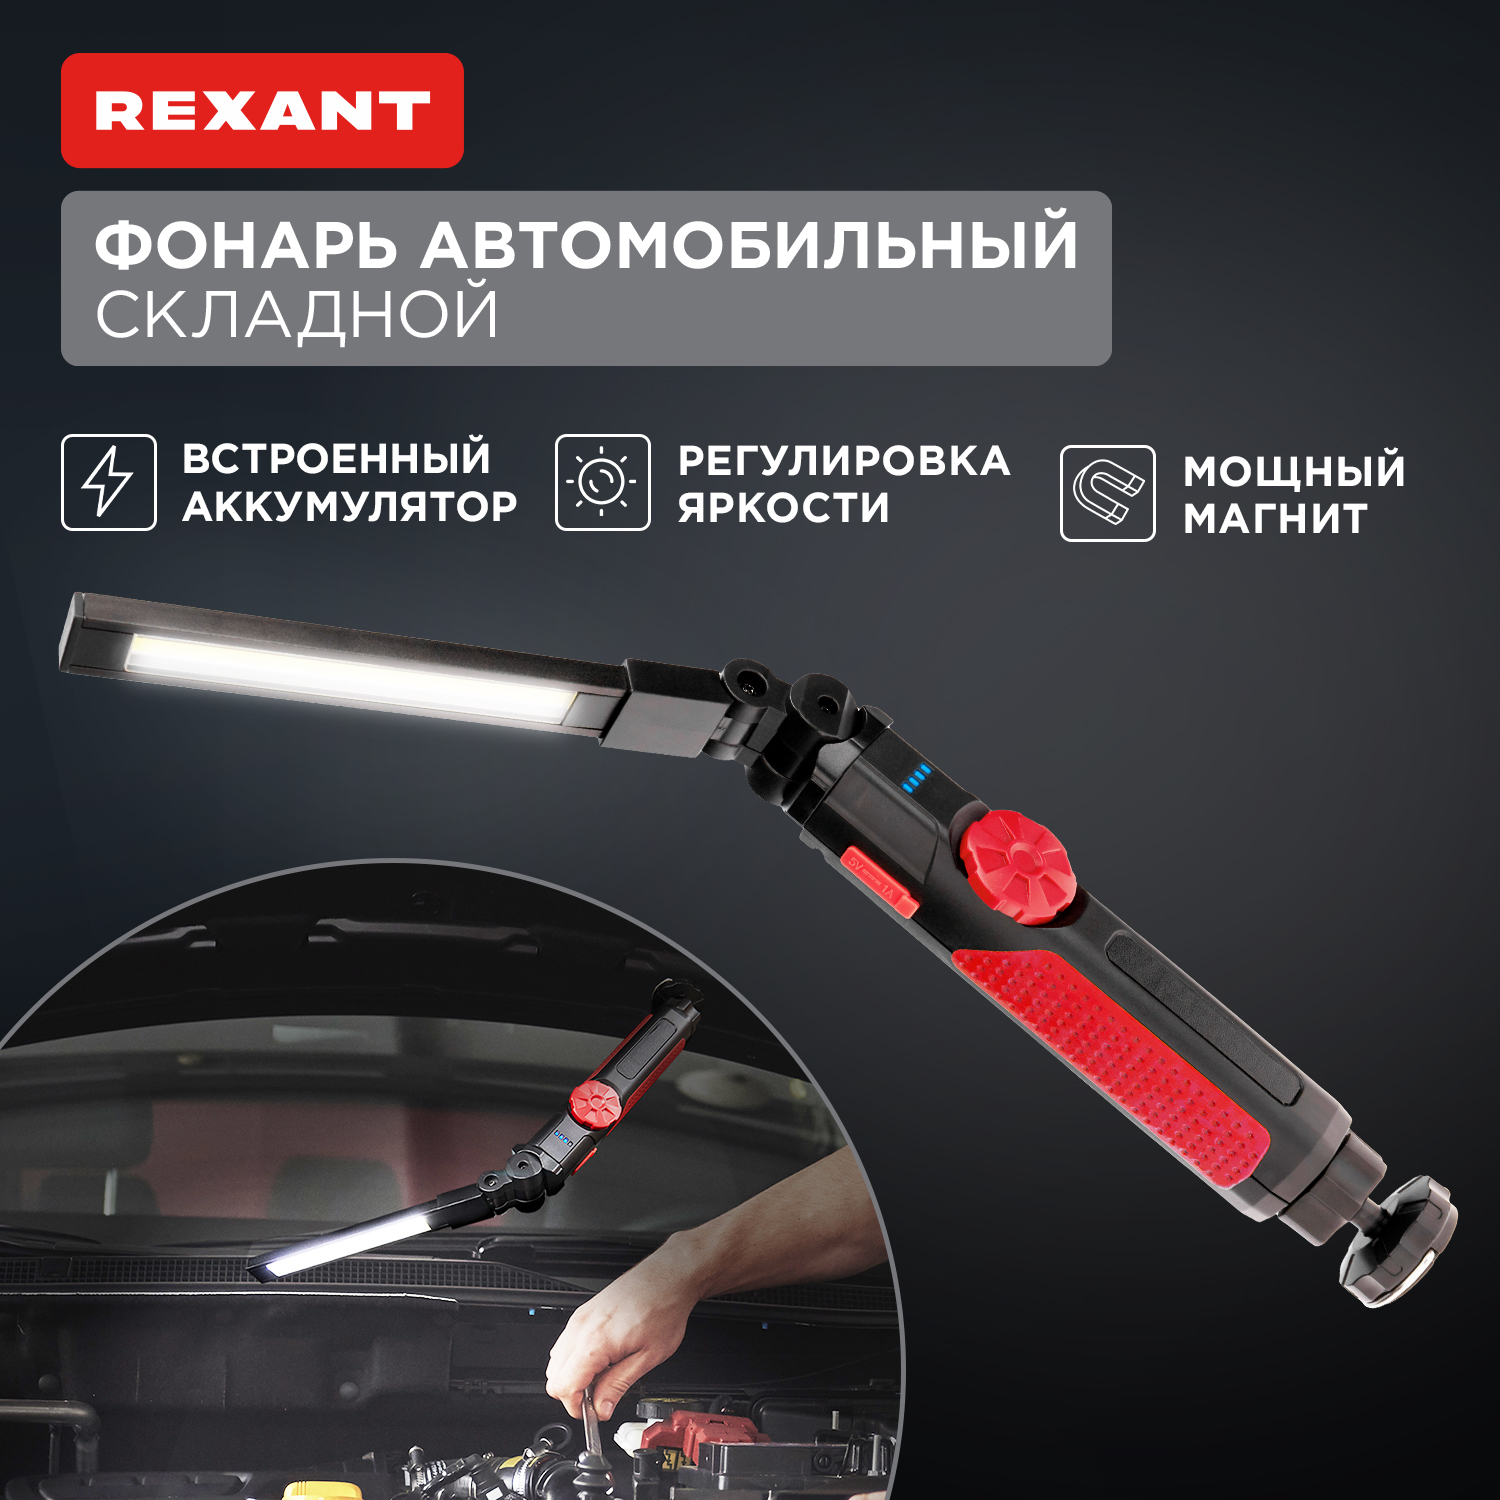 Фонарь автомобильный REXANT с регулировкой яркости, поворотным магнитом, USB 75-8042 автомобильный универсальный фонарь tdm